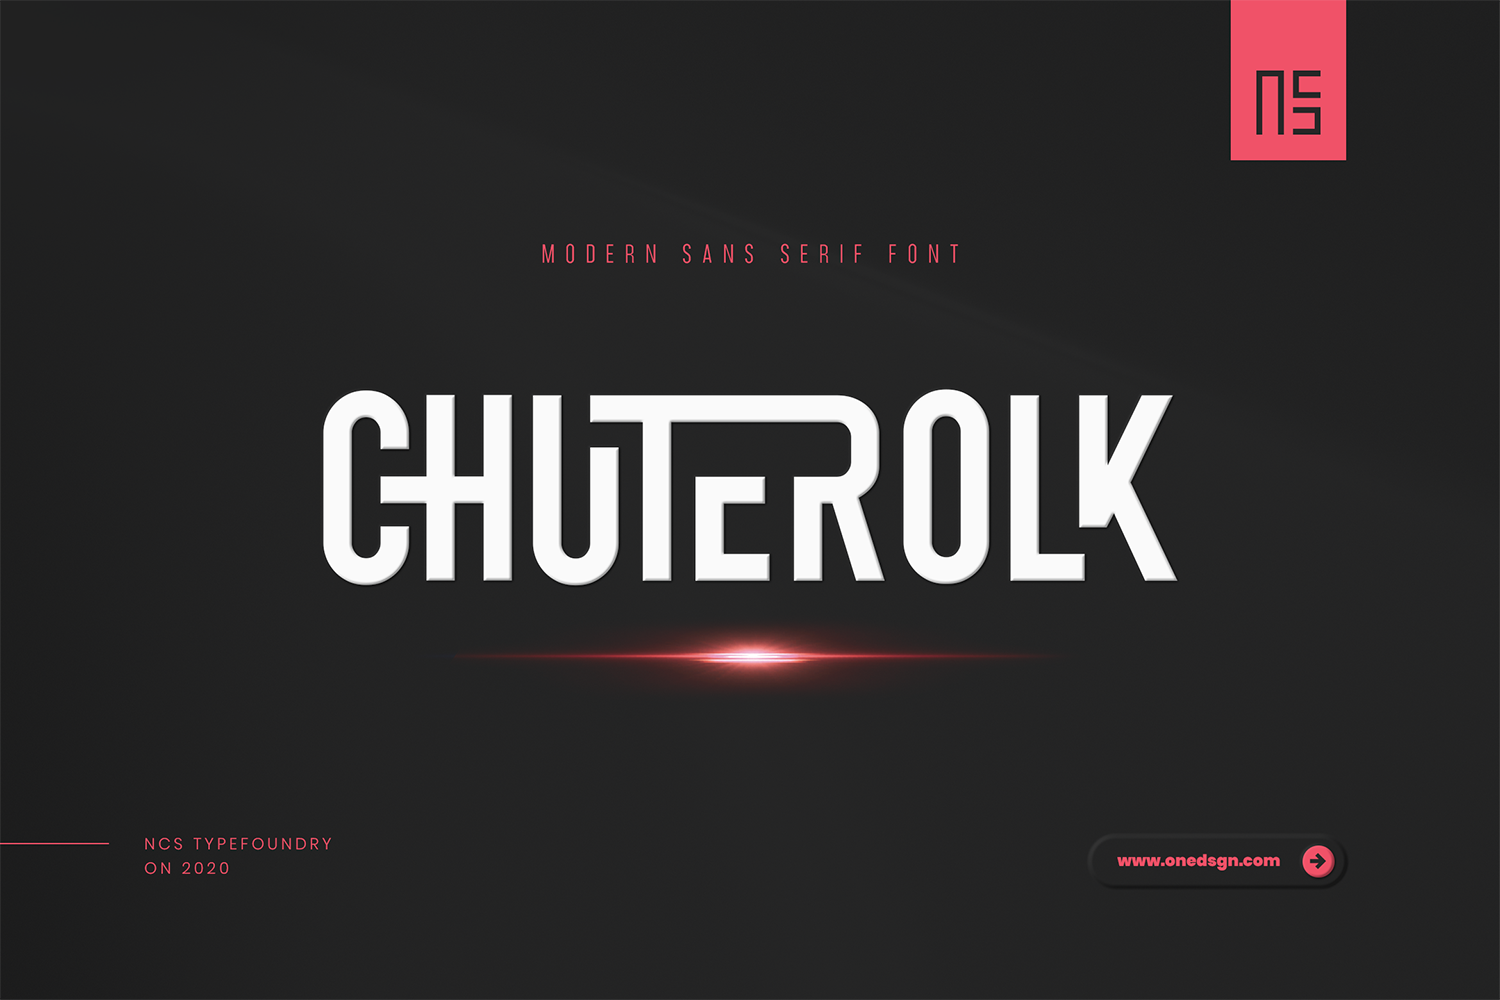 Chuterolk Free Font